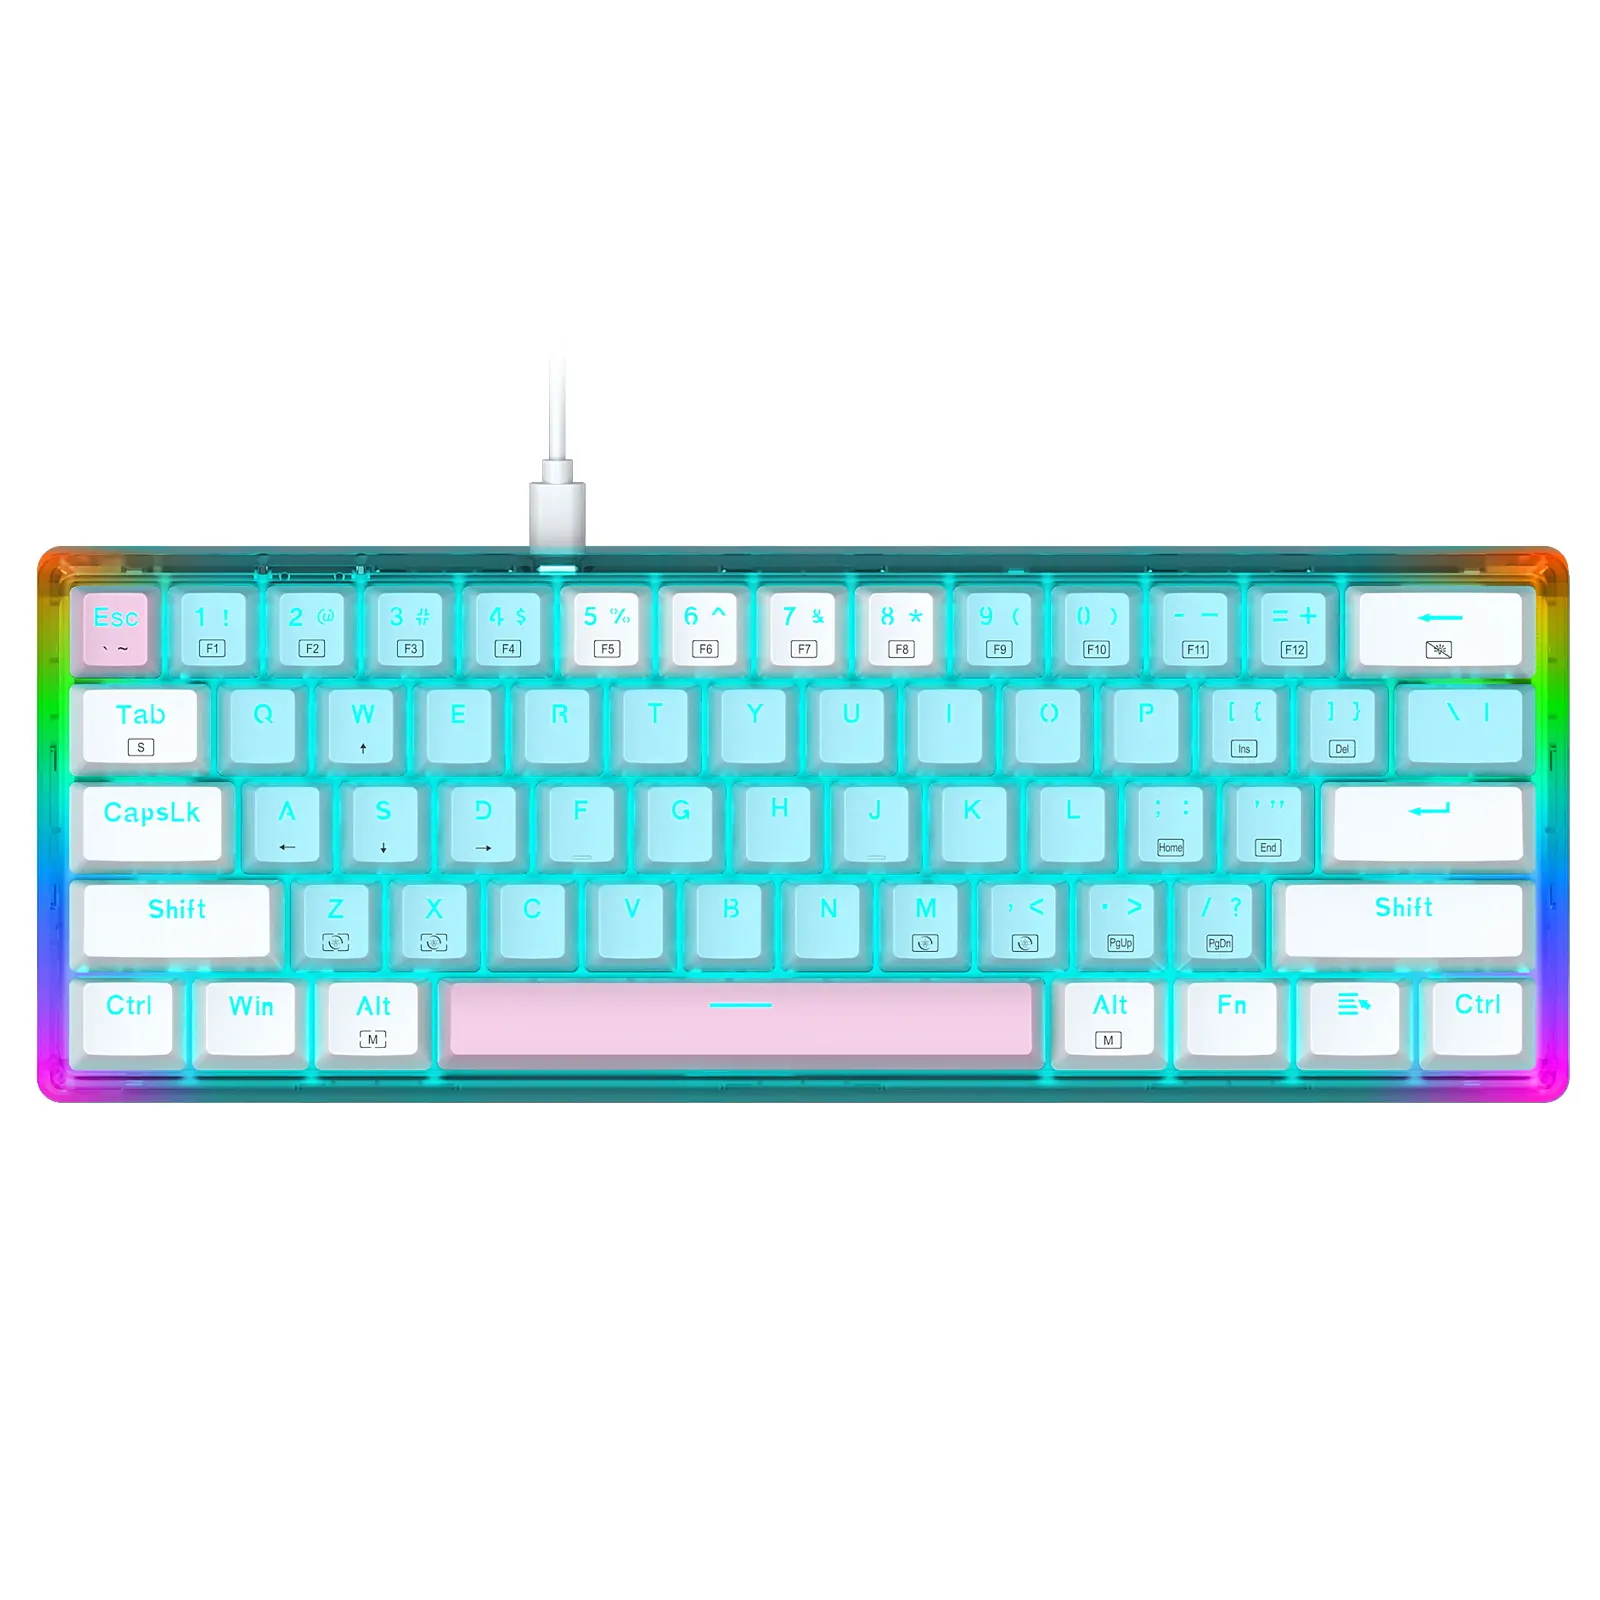 Venda quente legal teclado com fio E-YOOSO Z11 60% LED com fio macaron keycap transparente personalizado teclado mecânico do jogo